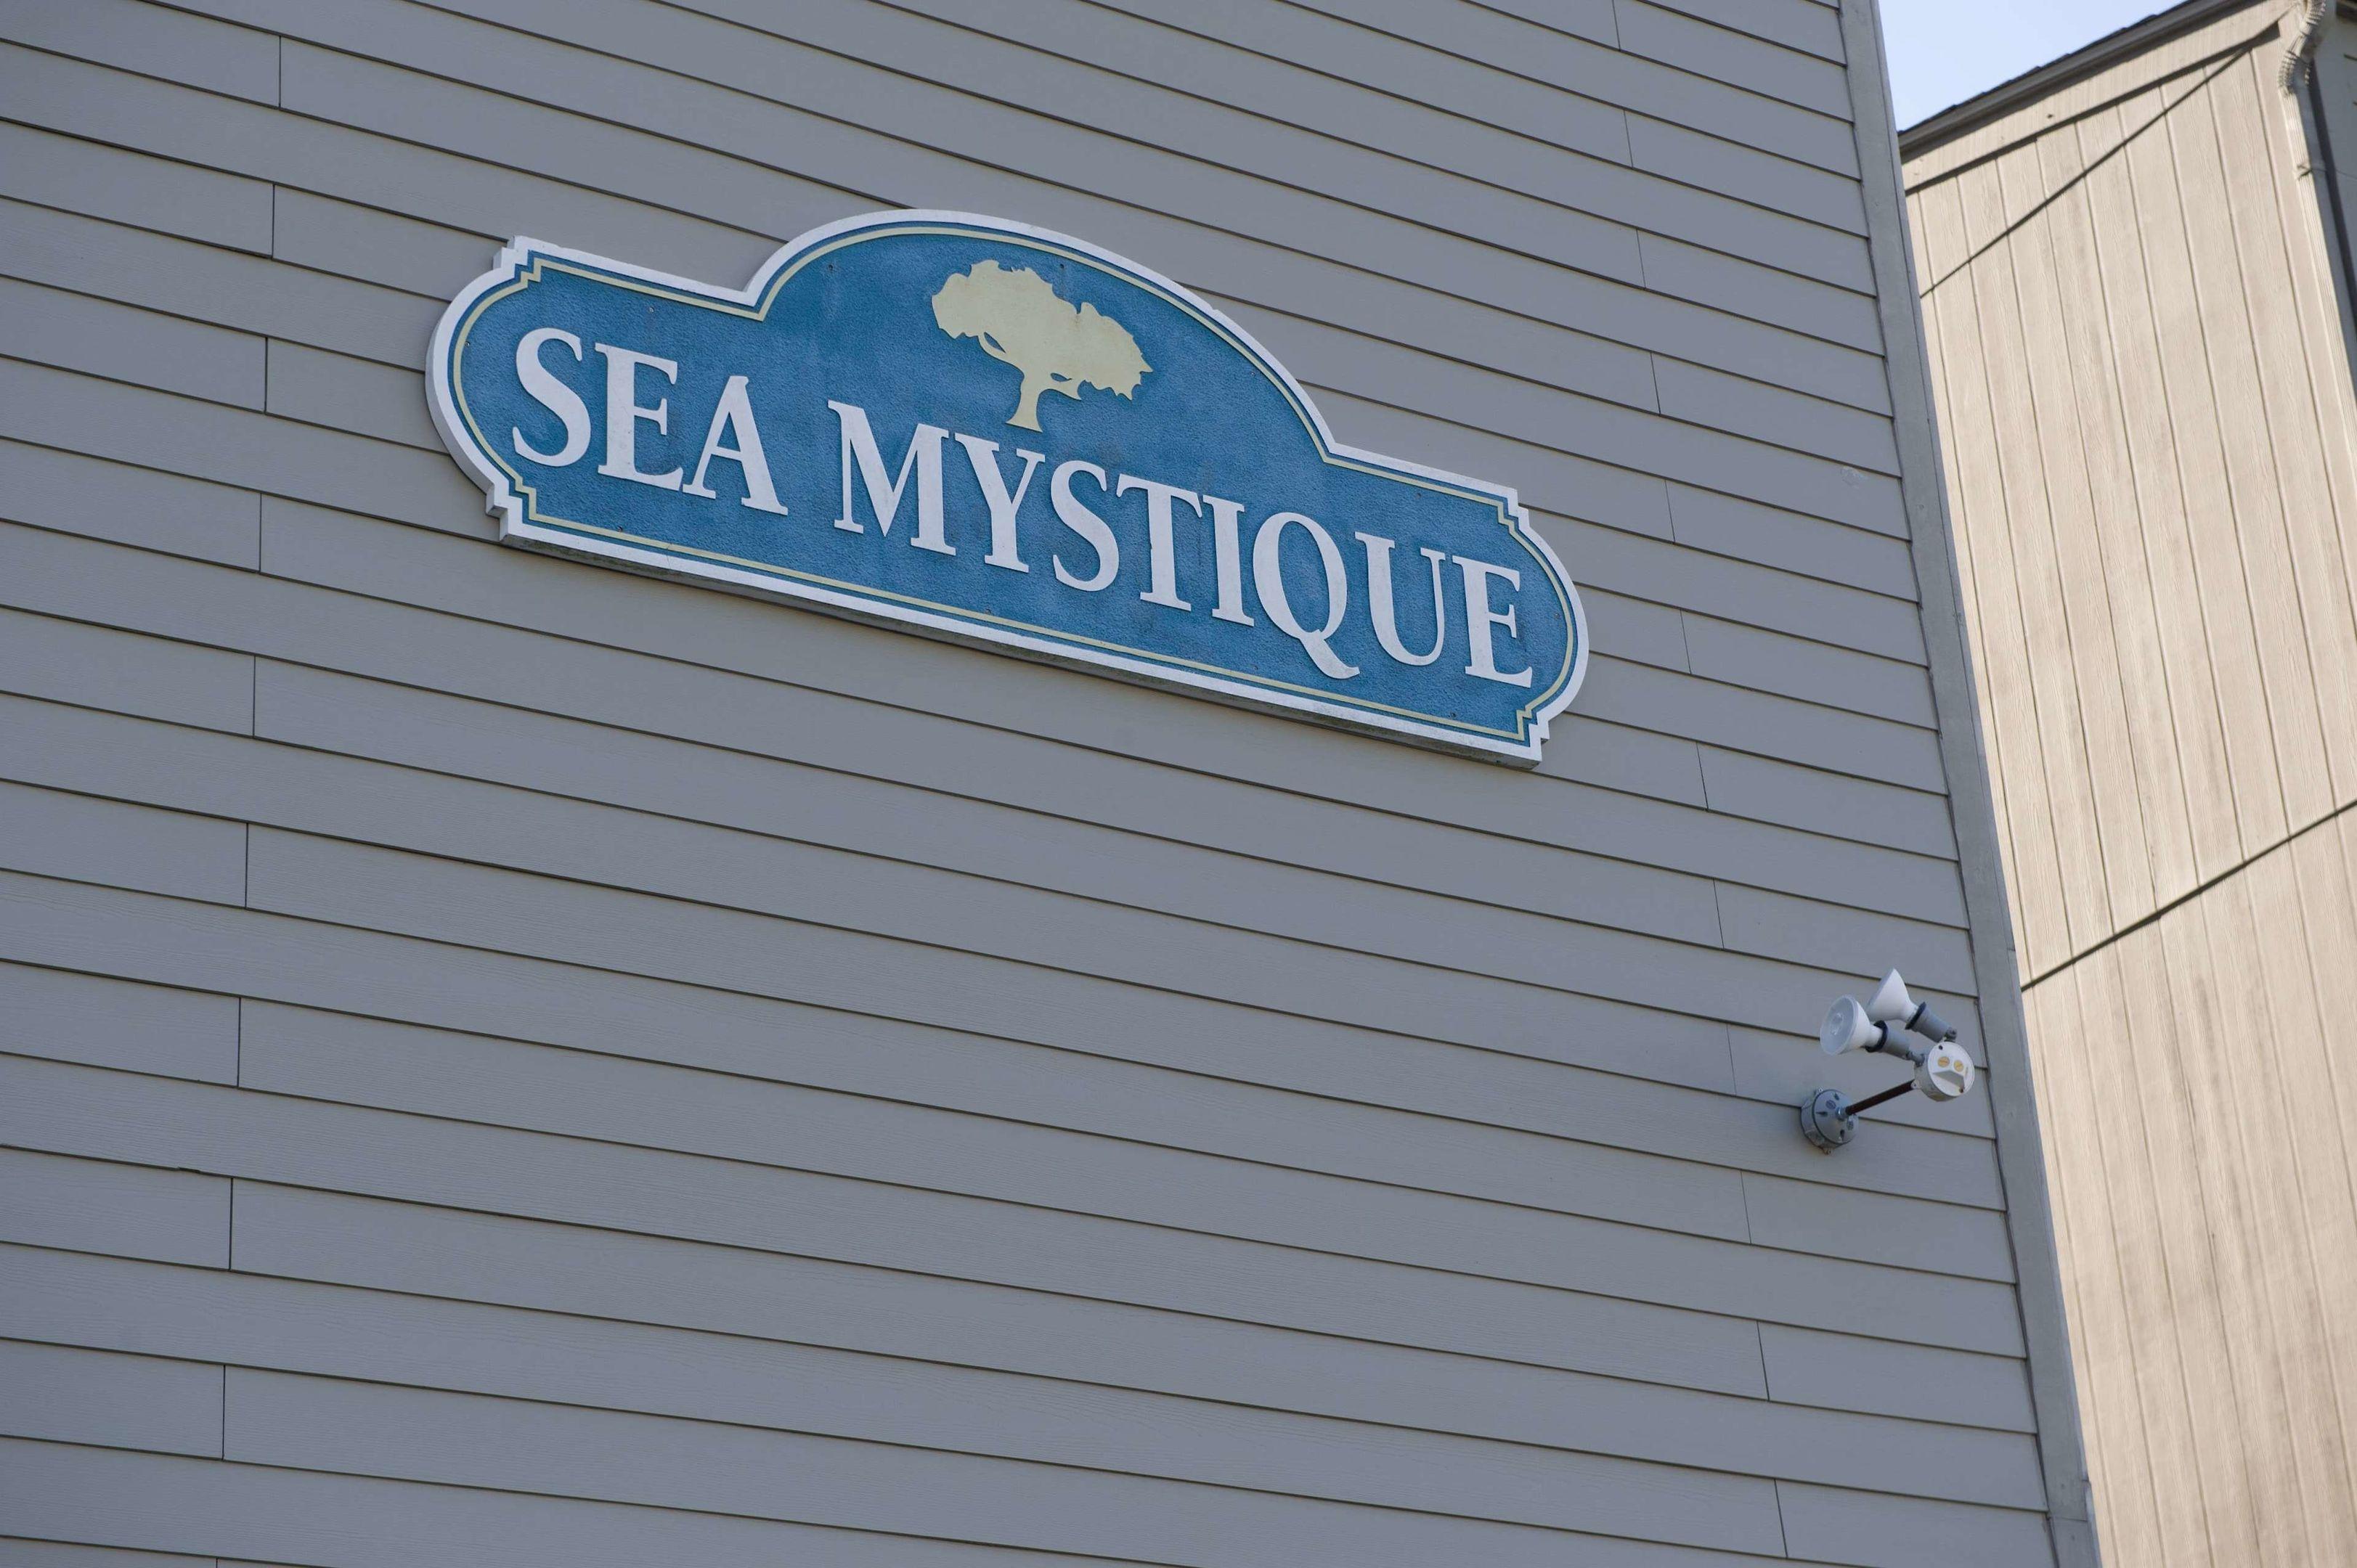 Sea Mystique Murrells Inlet a Ramada by Wyndham